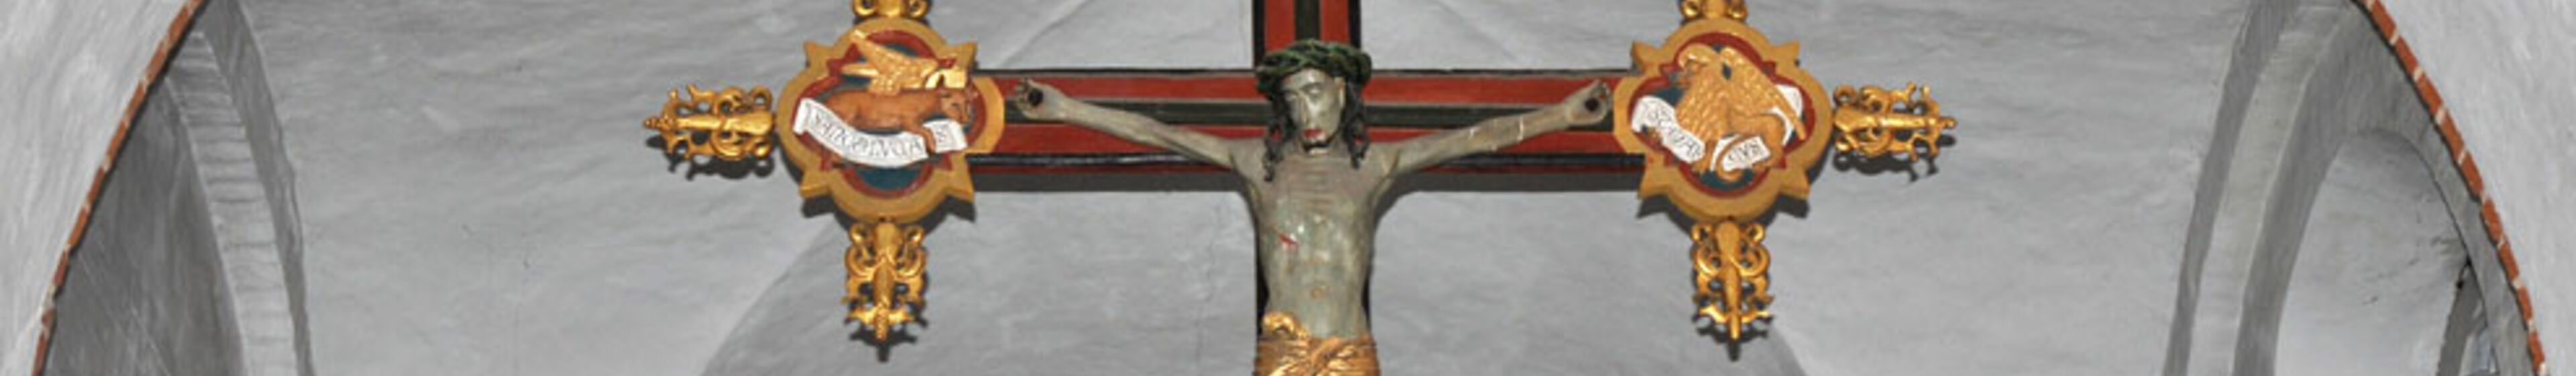 Jesuskreuz über dem Altar